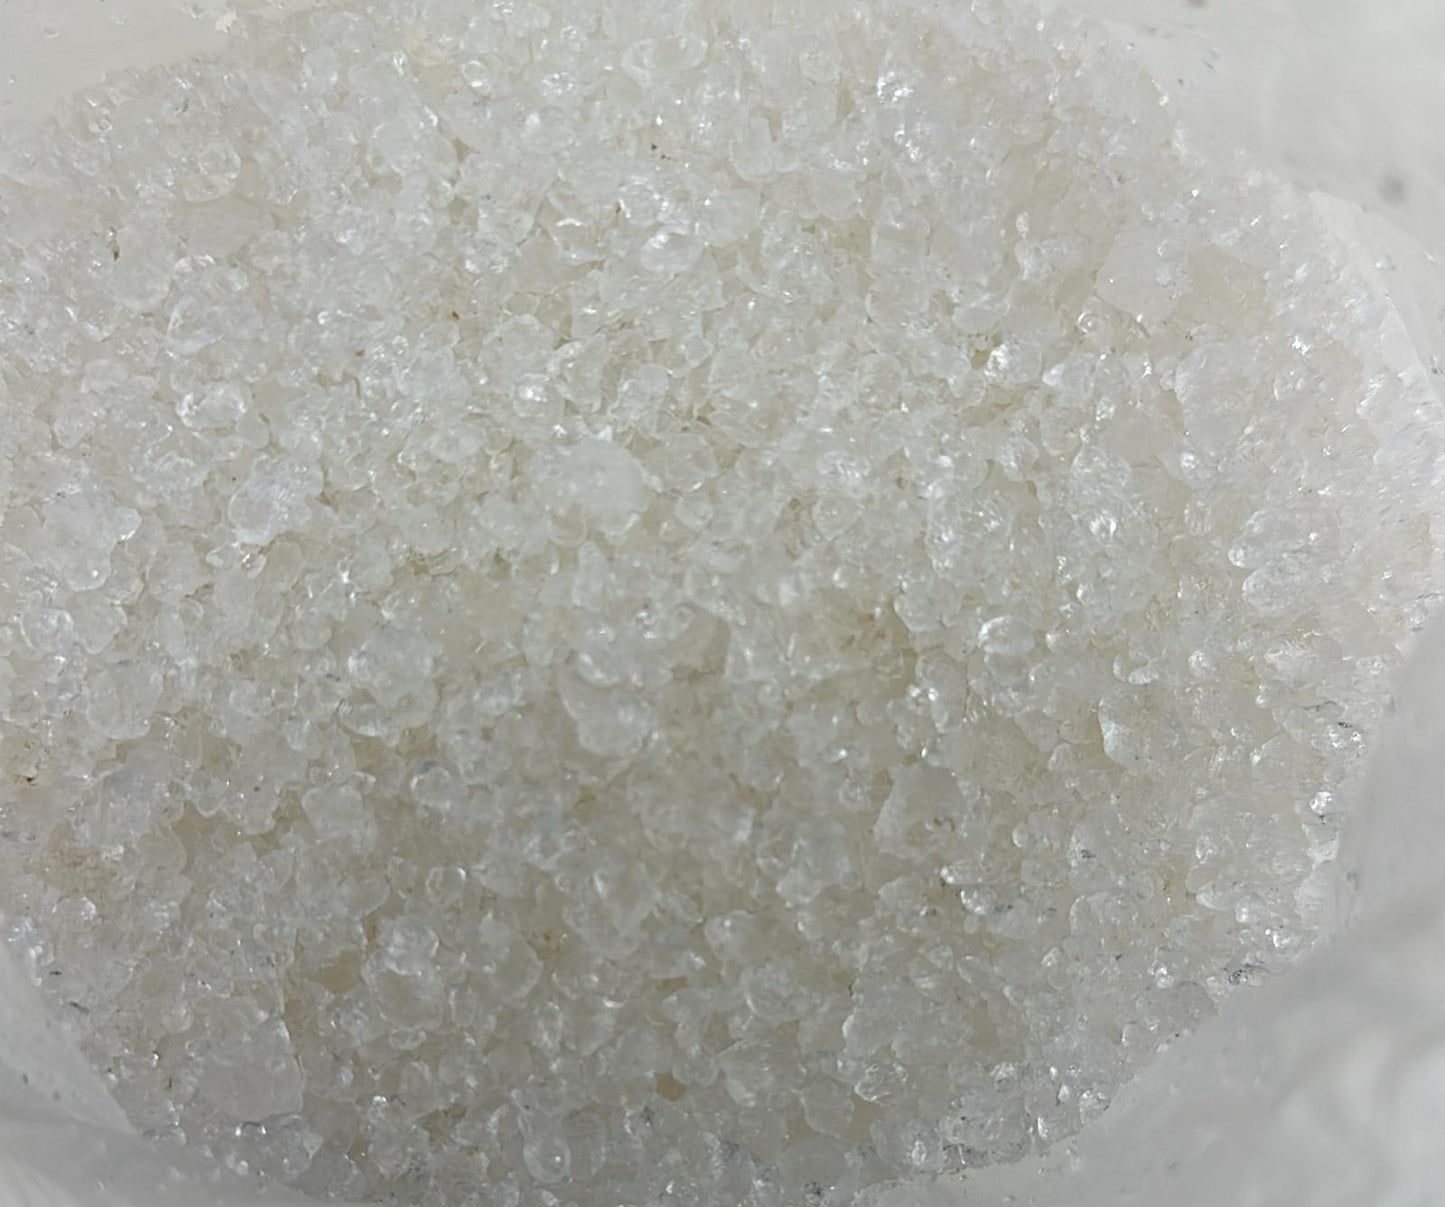 Body Salt(1lb net wt)